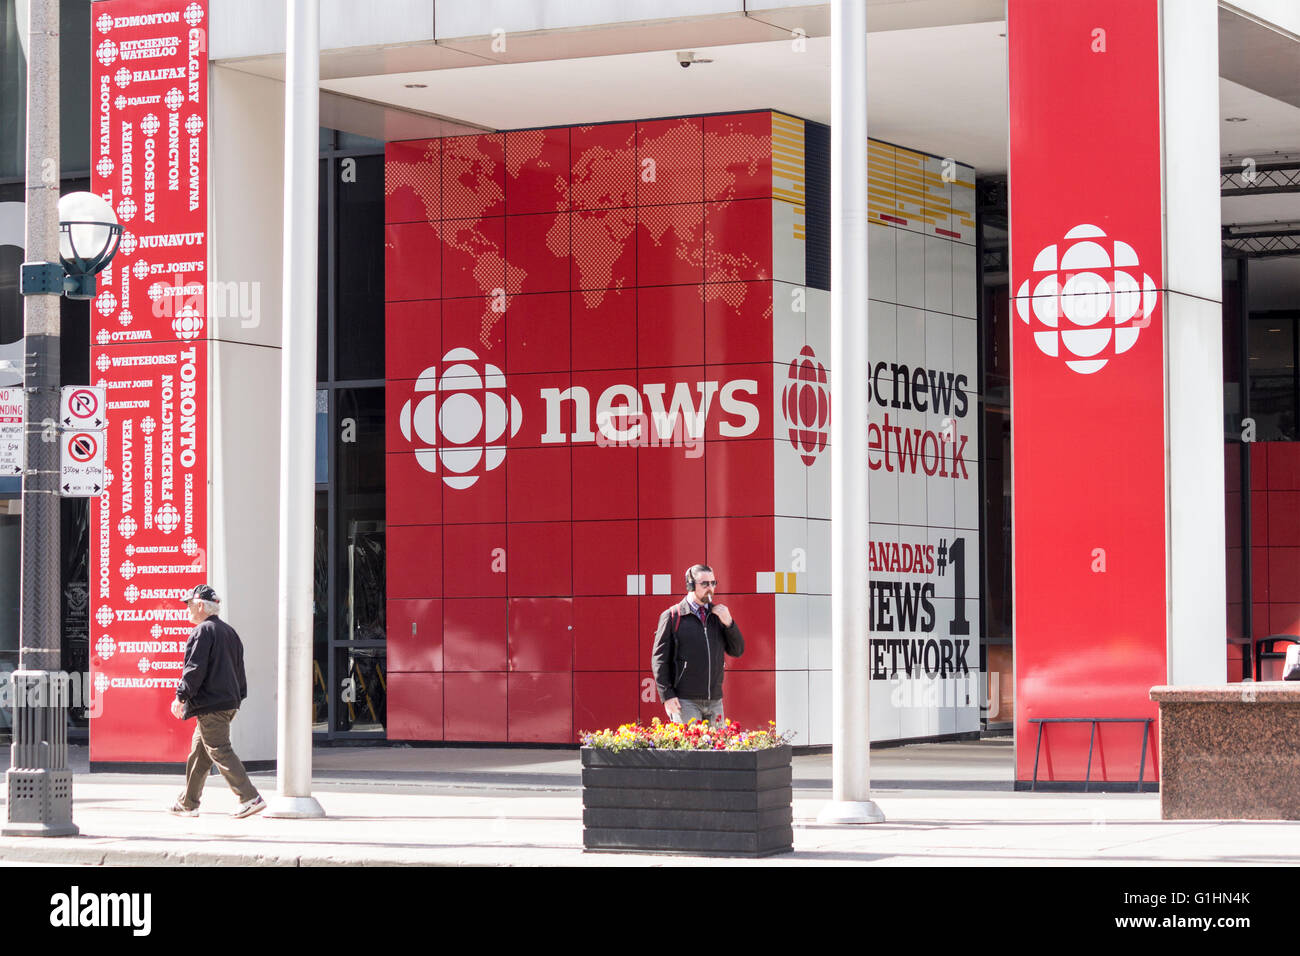 Les gens qui marchent devant l'entrée de nouvelles de Radio-Canada, se trouvant au centre-ville de Toronto, Ontario, Canada Banque D'Images